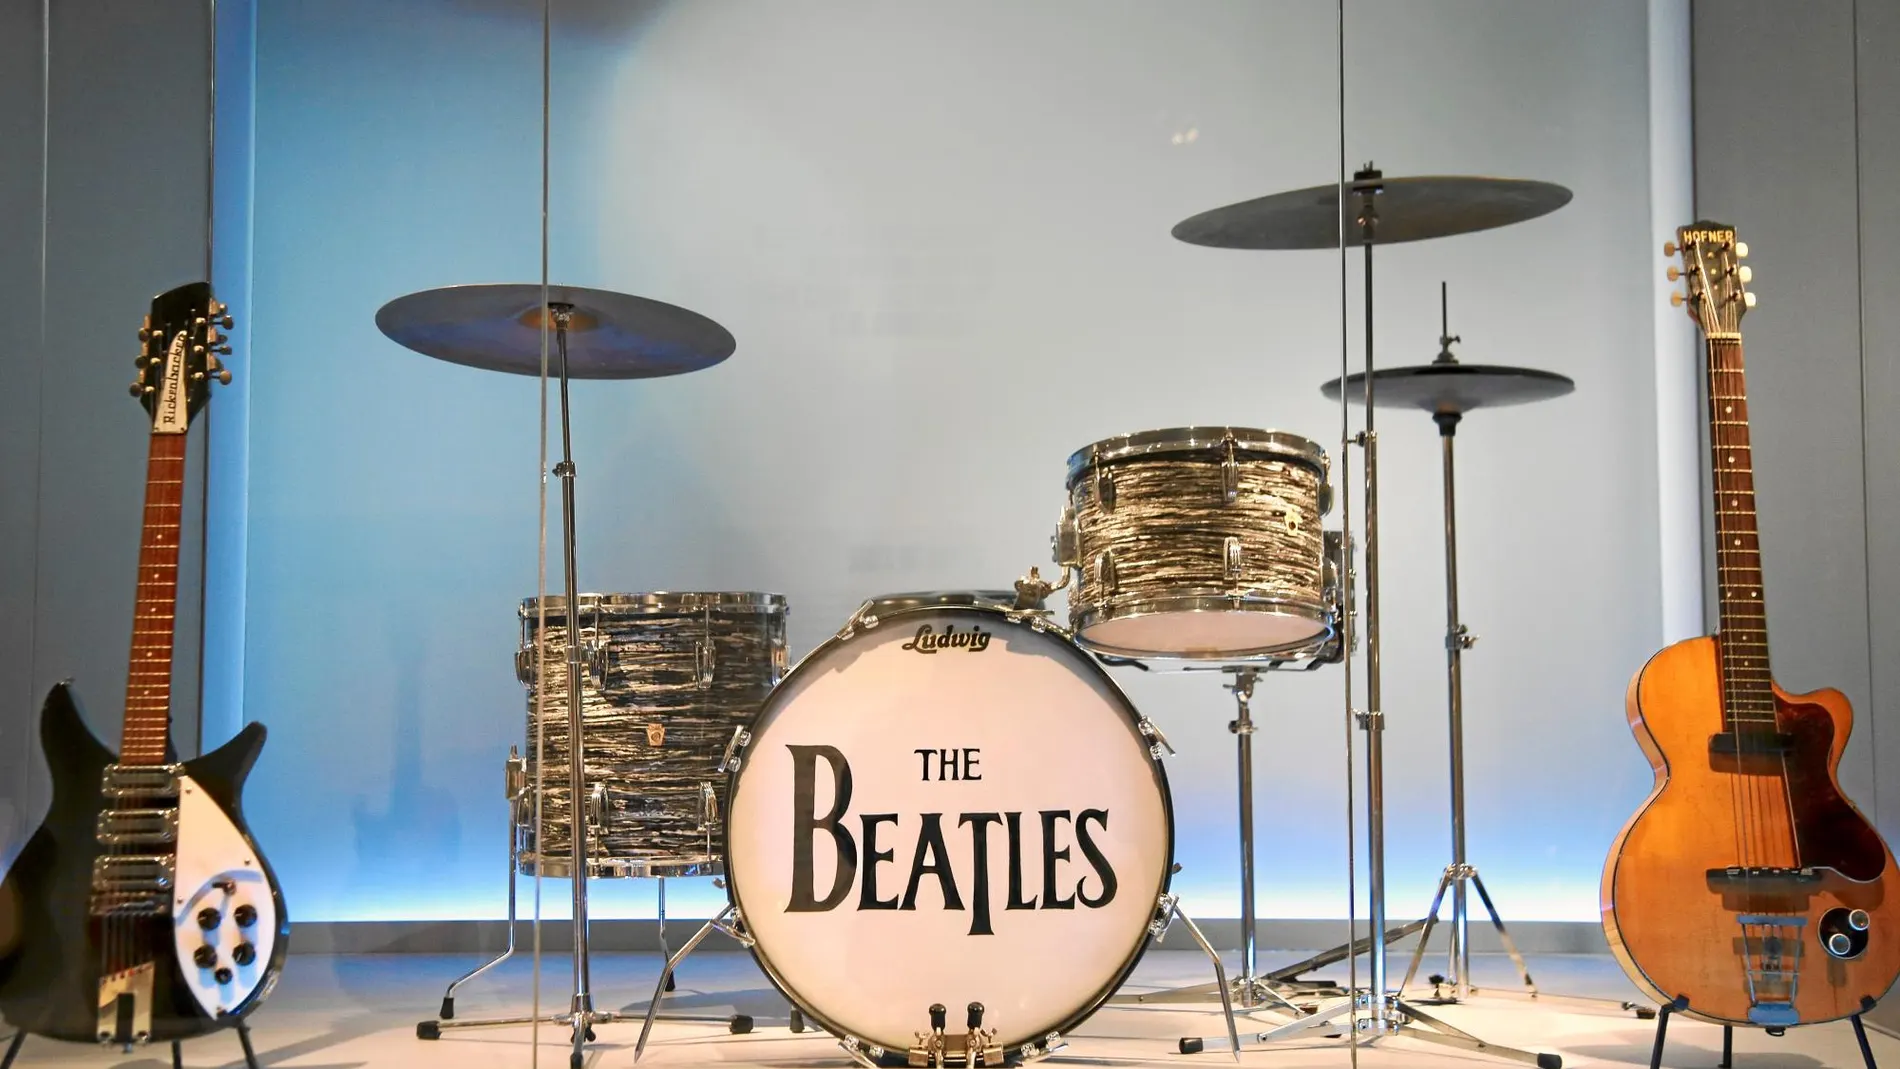 John, Paul, George y Ringo no necesitan apellidos para que sepamos que se trata de los Beatles, el grupo de música más famoso de la historia